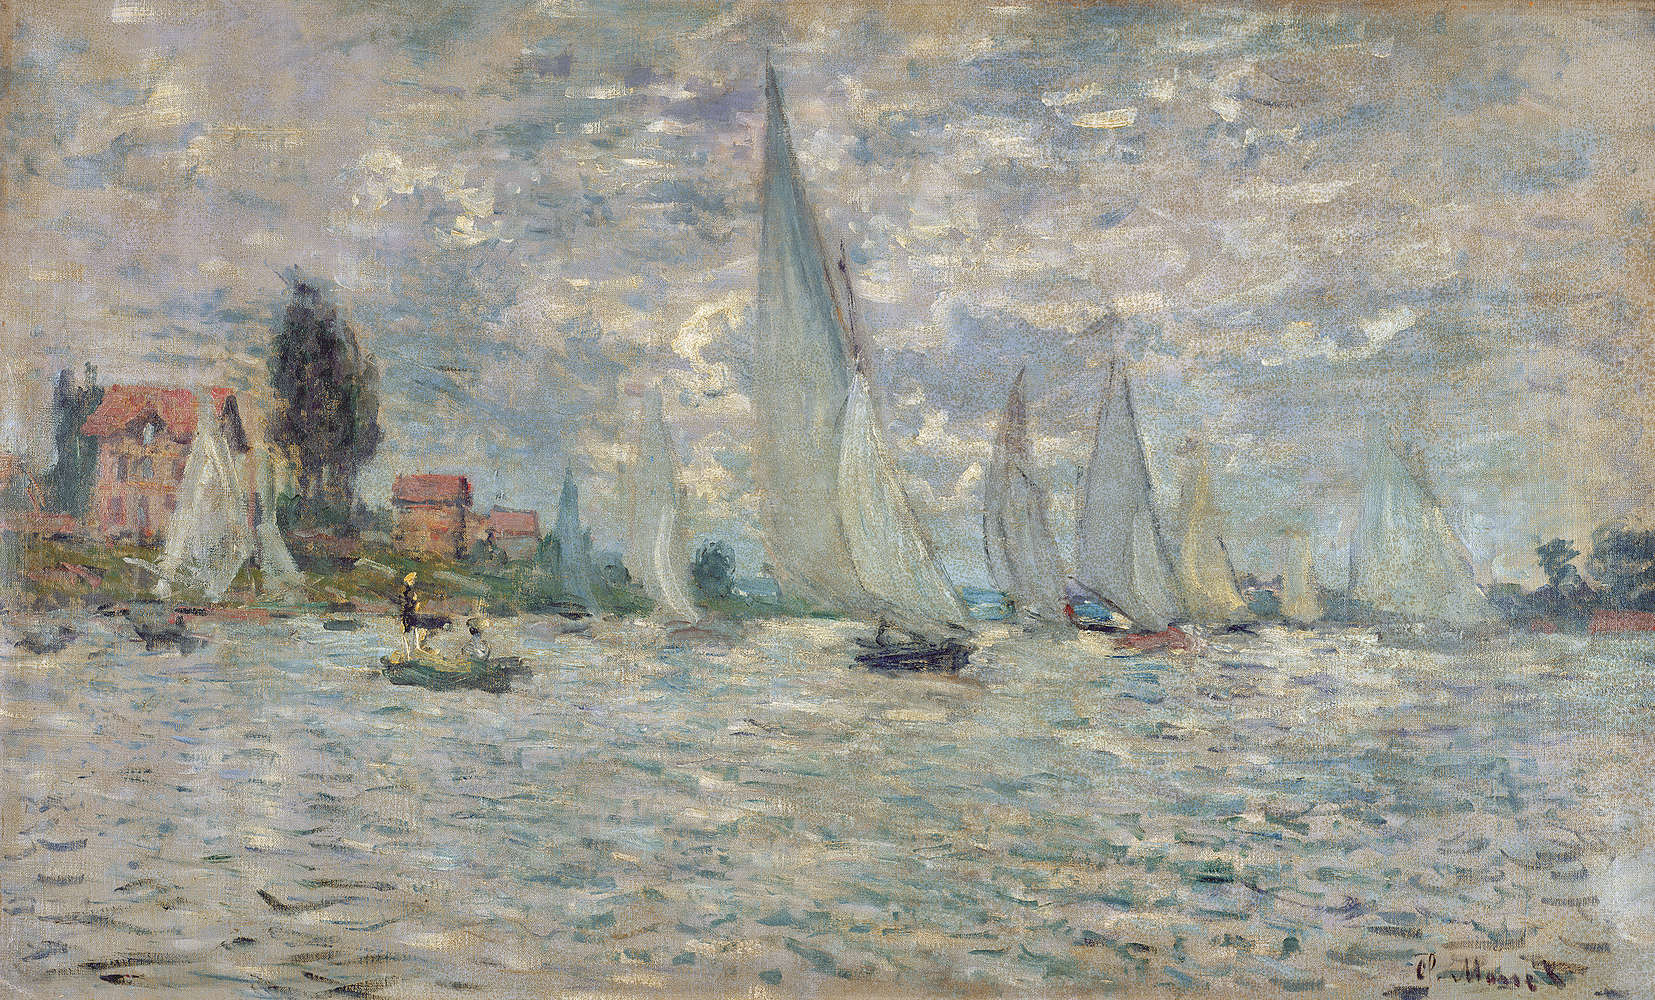             Papier peint panoramique "Les bateaux ou la régate à Argenteuil" de Claude Monet
        